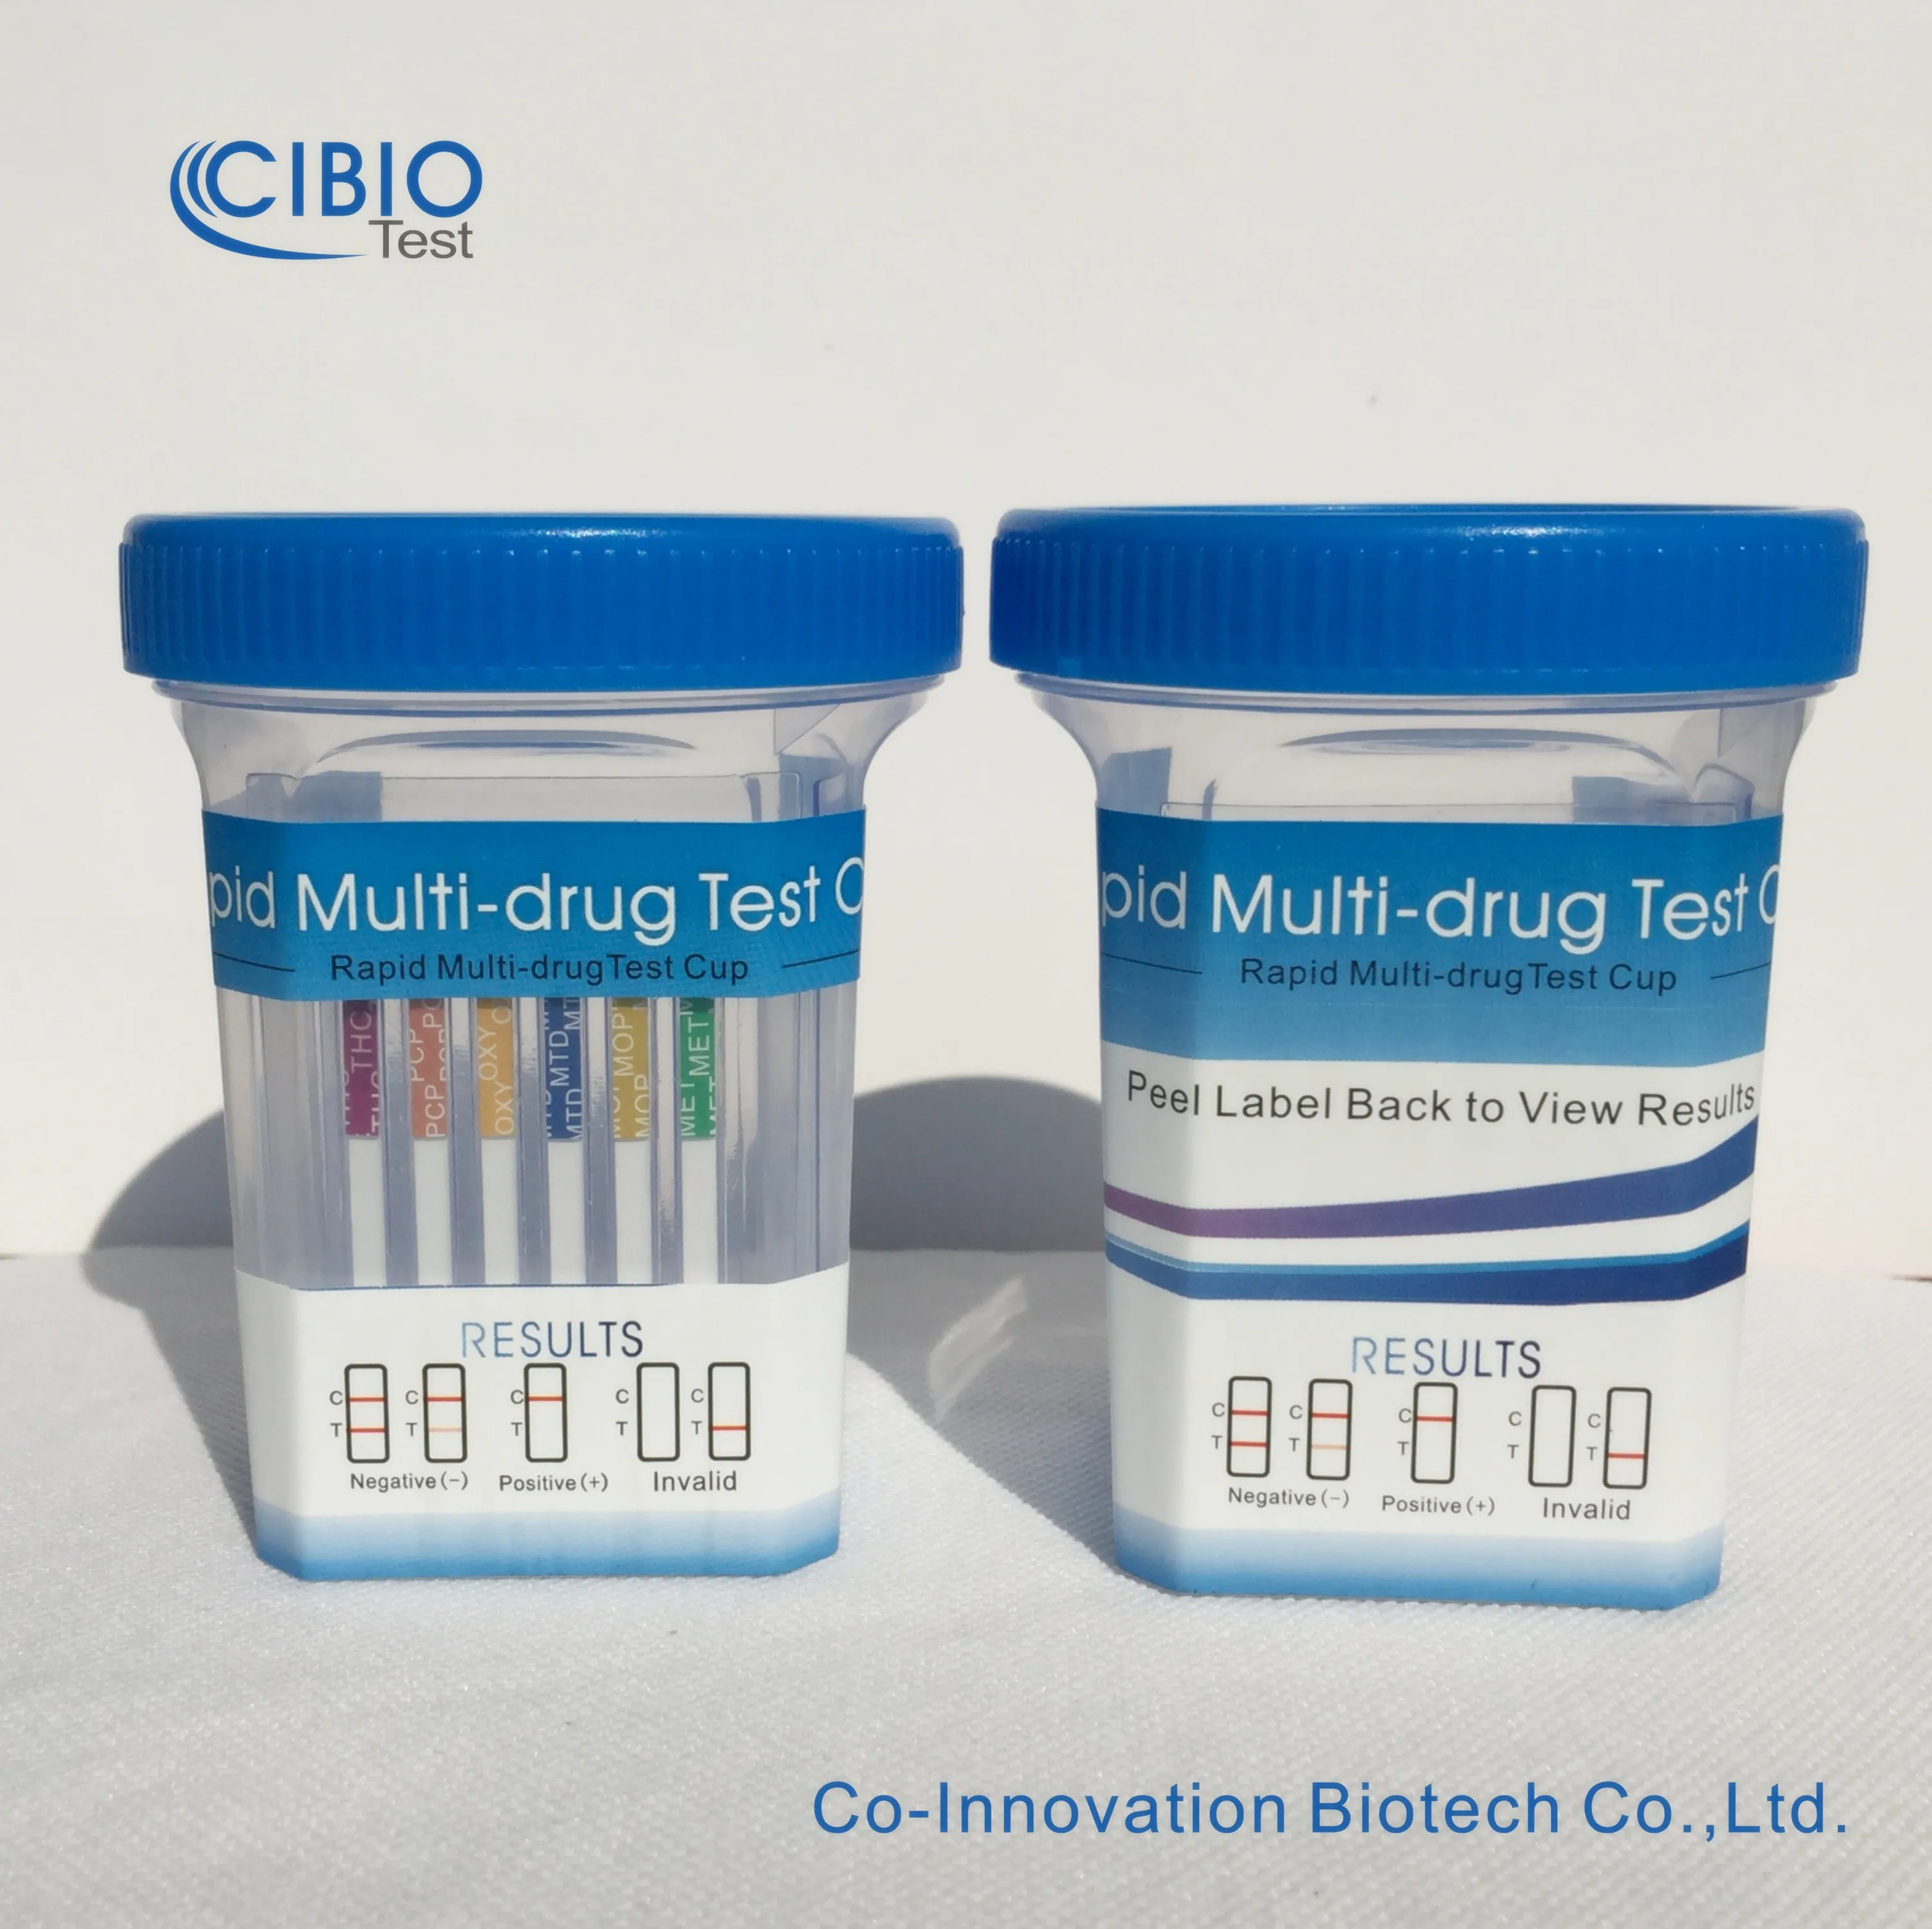 Drug Test THC (Marijuana) Urine Rapid Test Kits Multi-Drug of Abuse Test Kit With CE Certificate